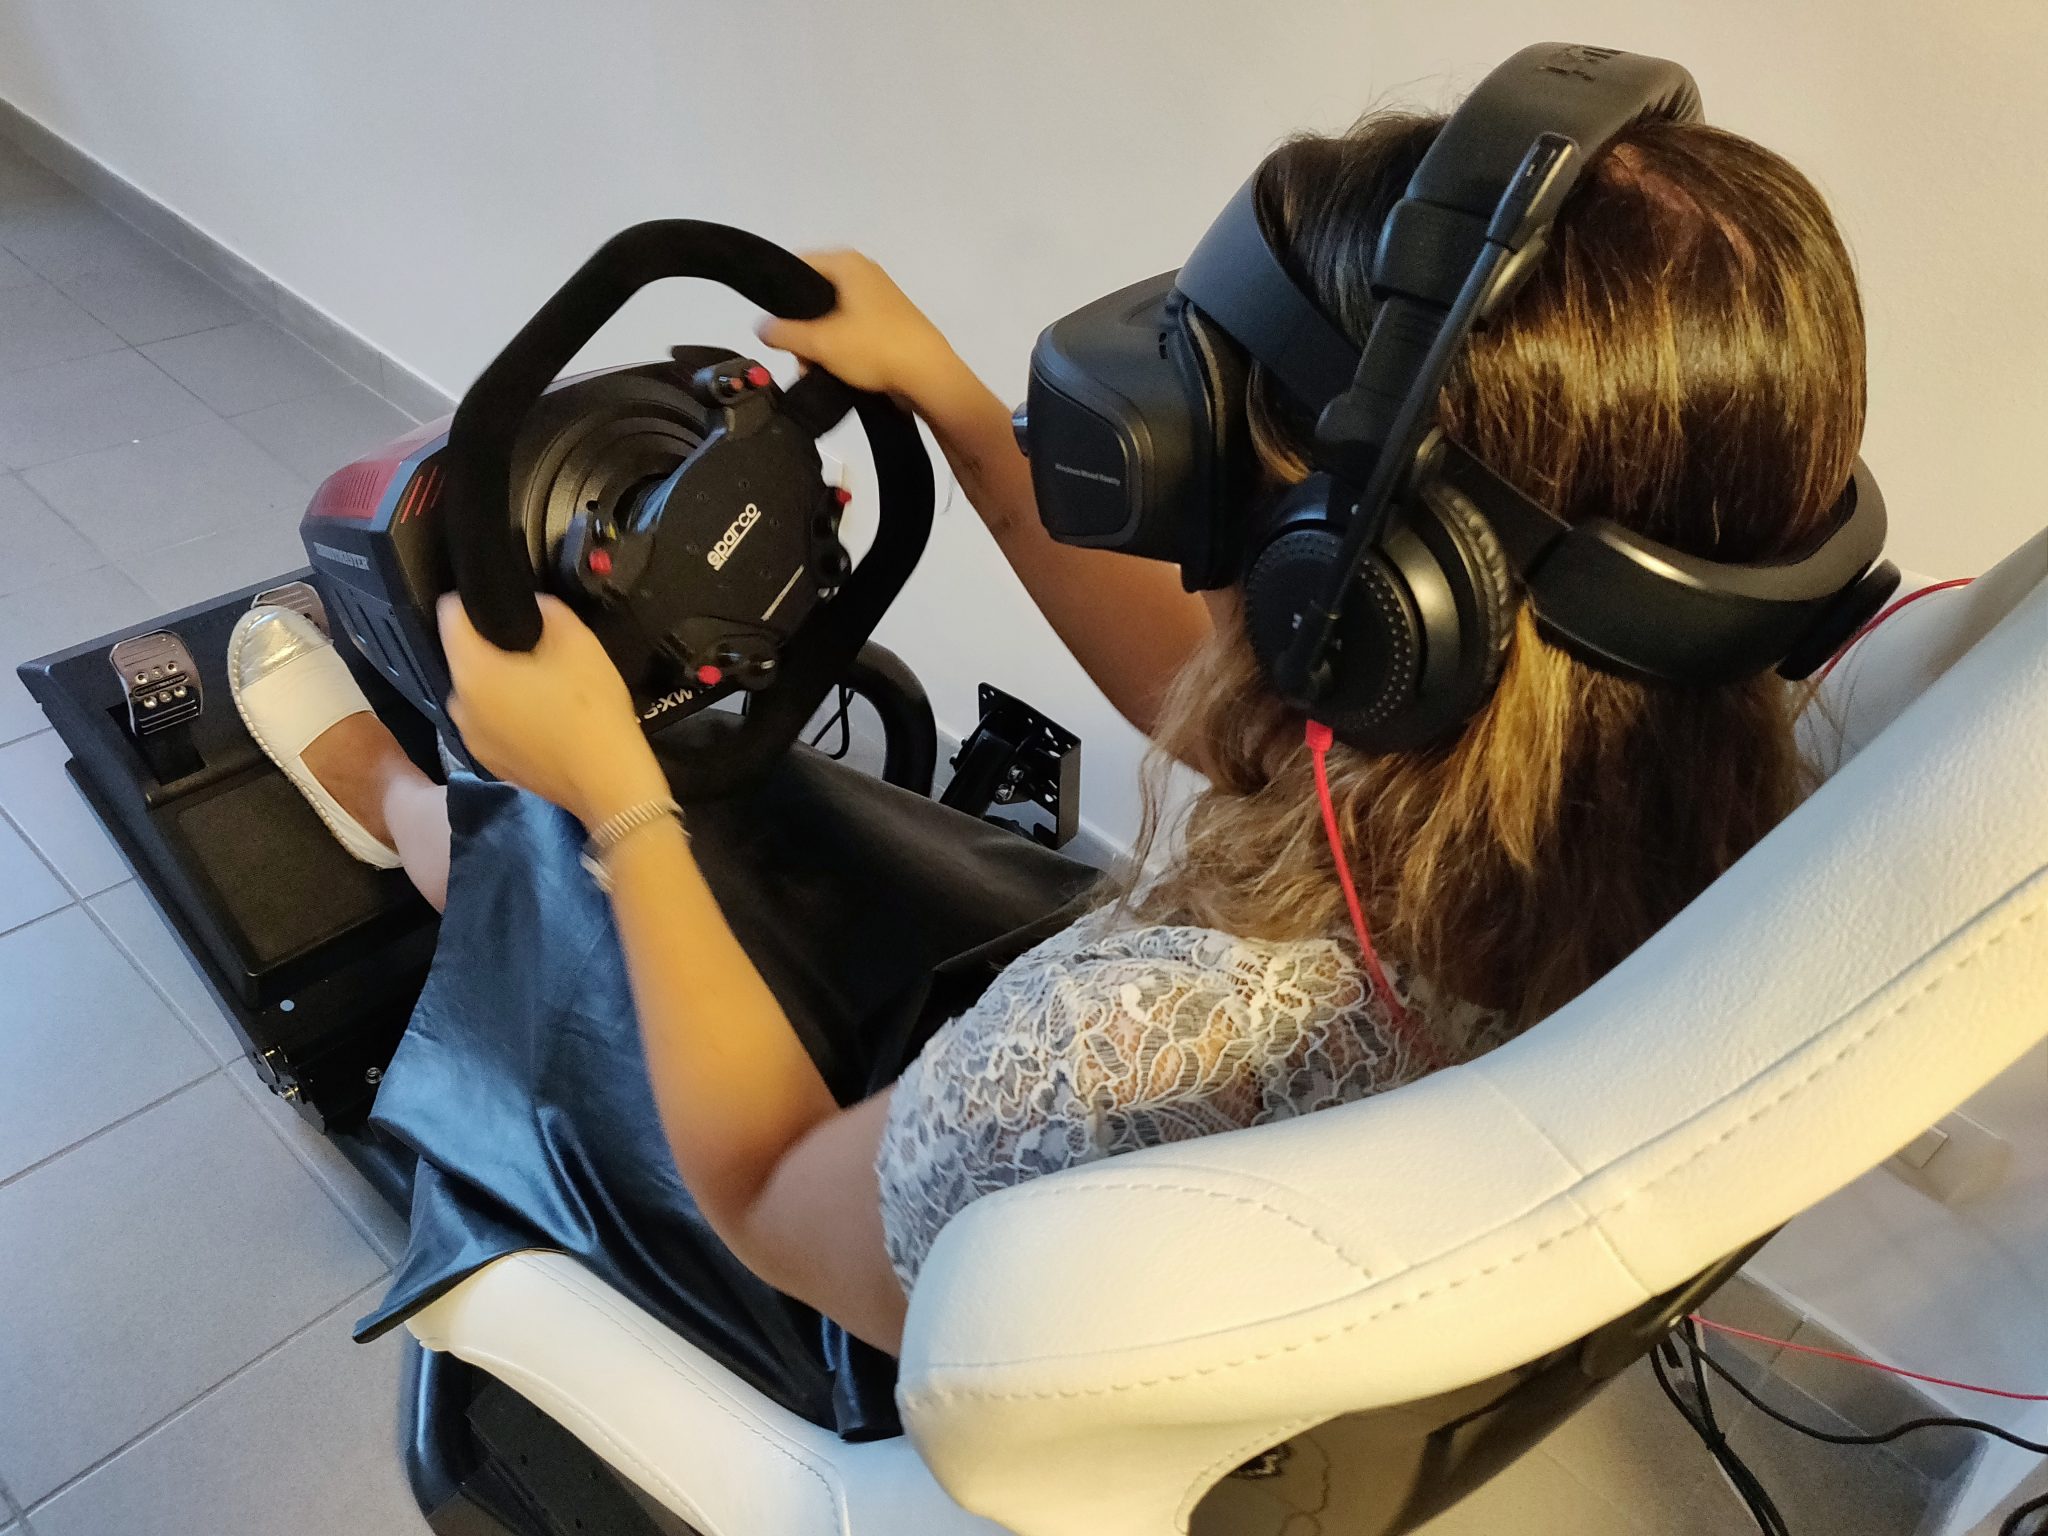 vr game cave realtà virtuale milano benessere tecnologico psicologia laura fasano sala giochi simulatore guida